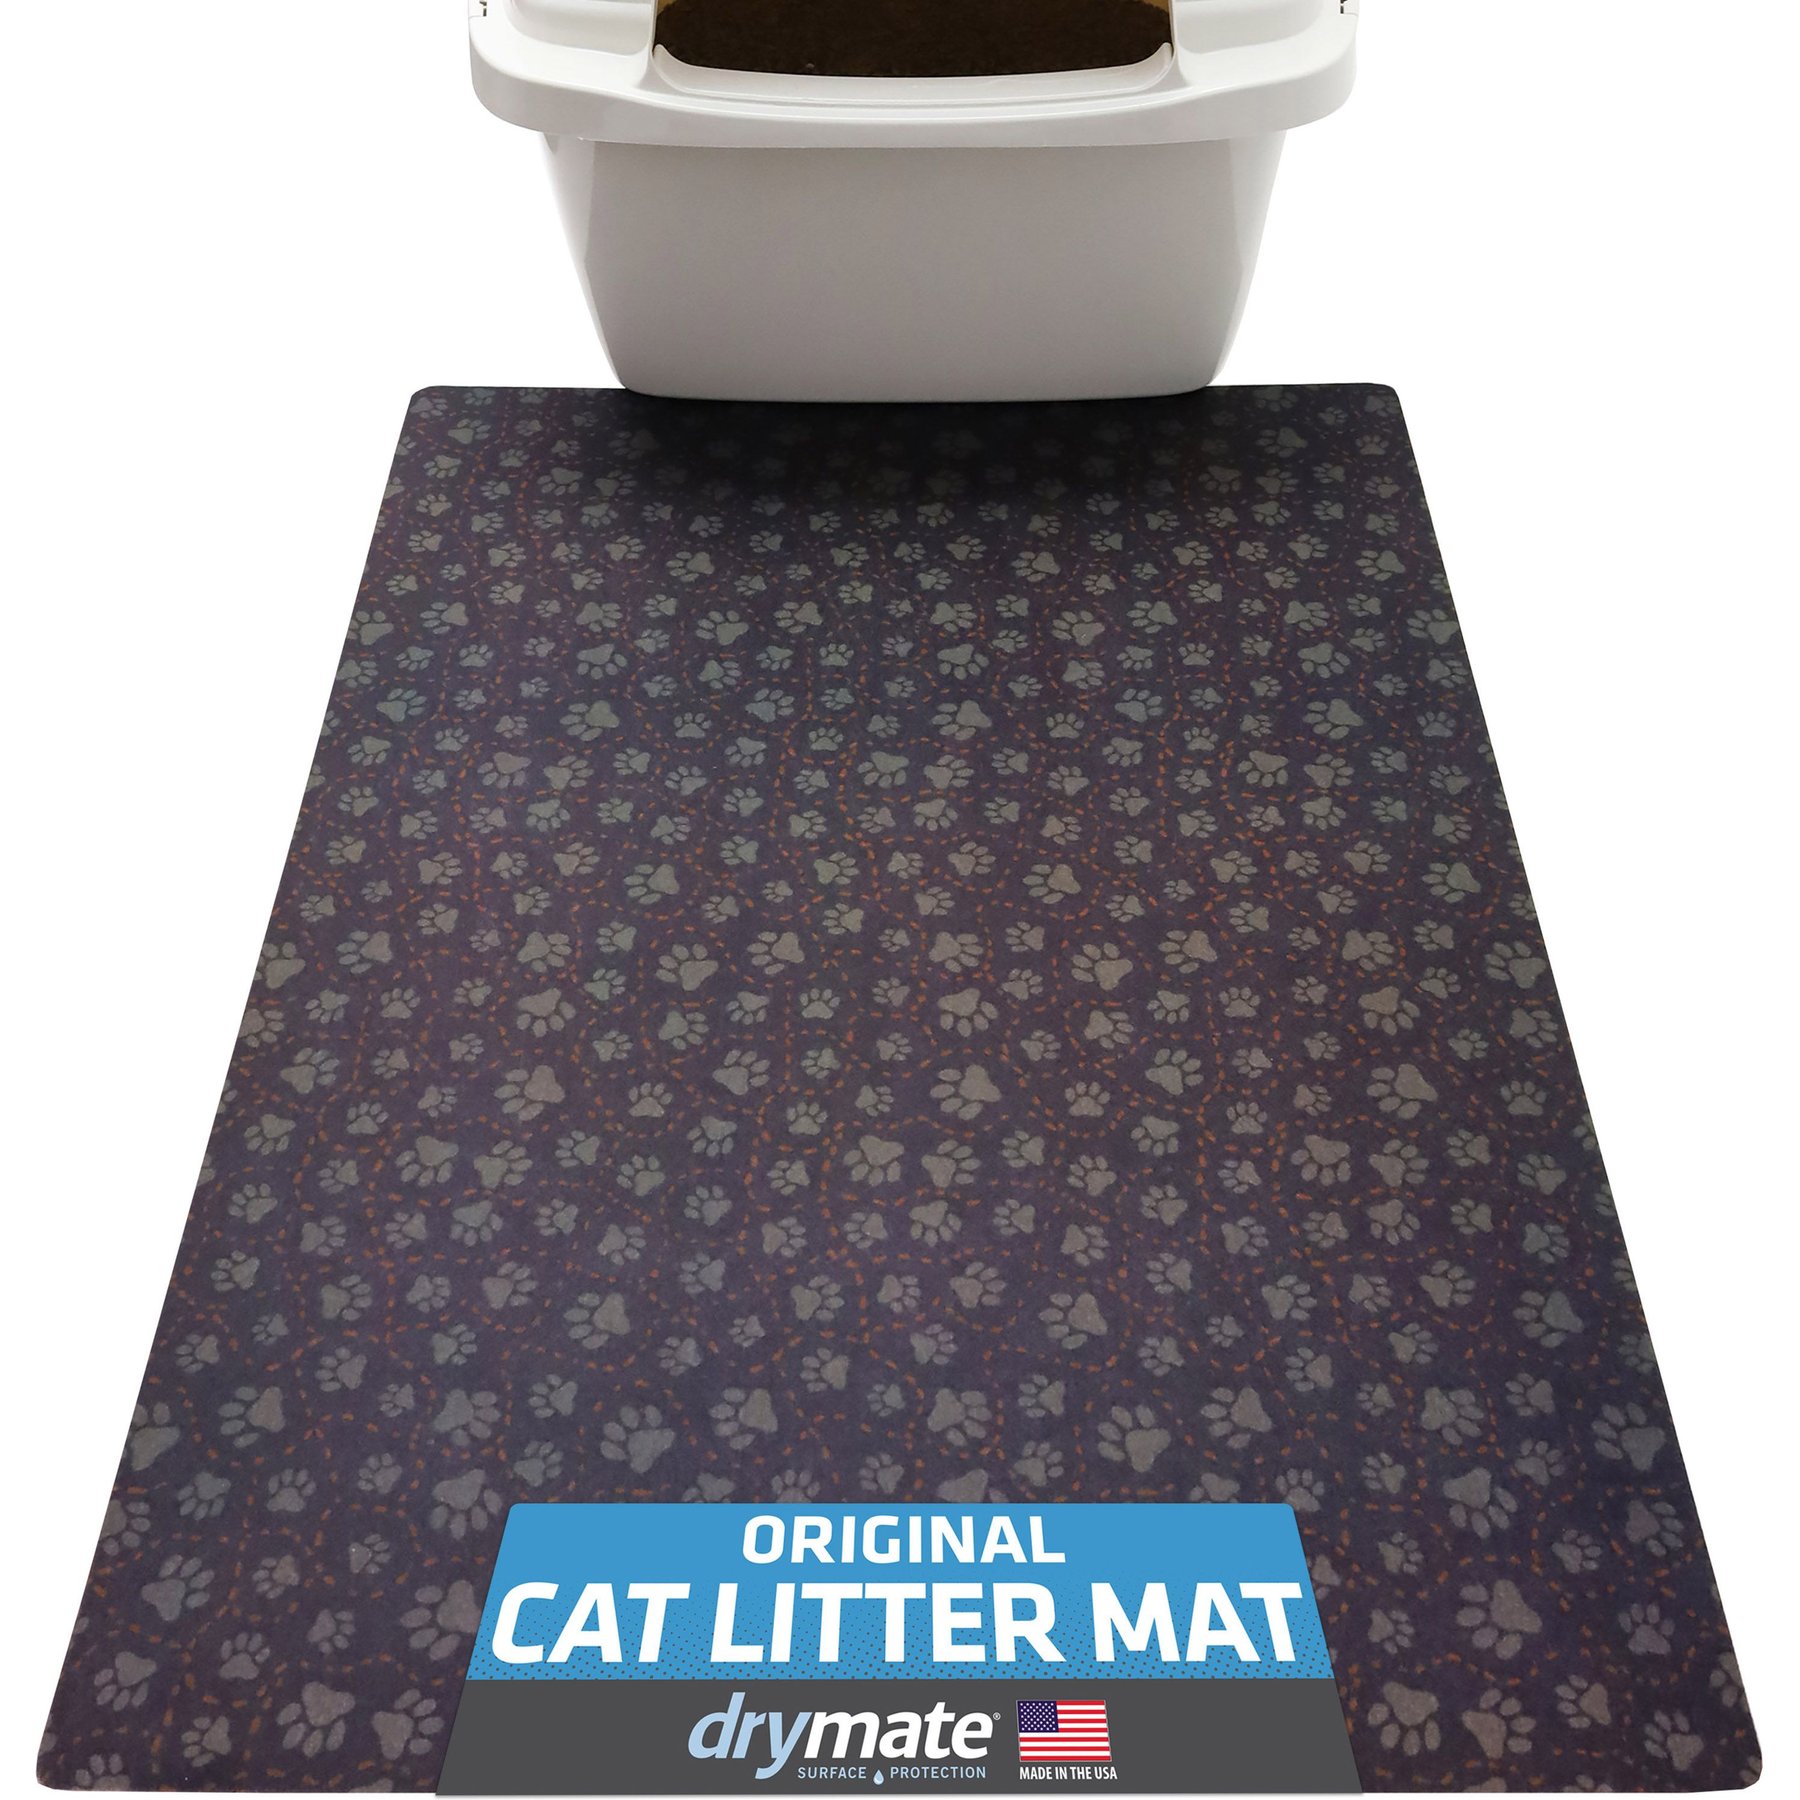 21 x 14 Cat Litter Mat, Kitty Litter Trapping Mat, Double Layer